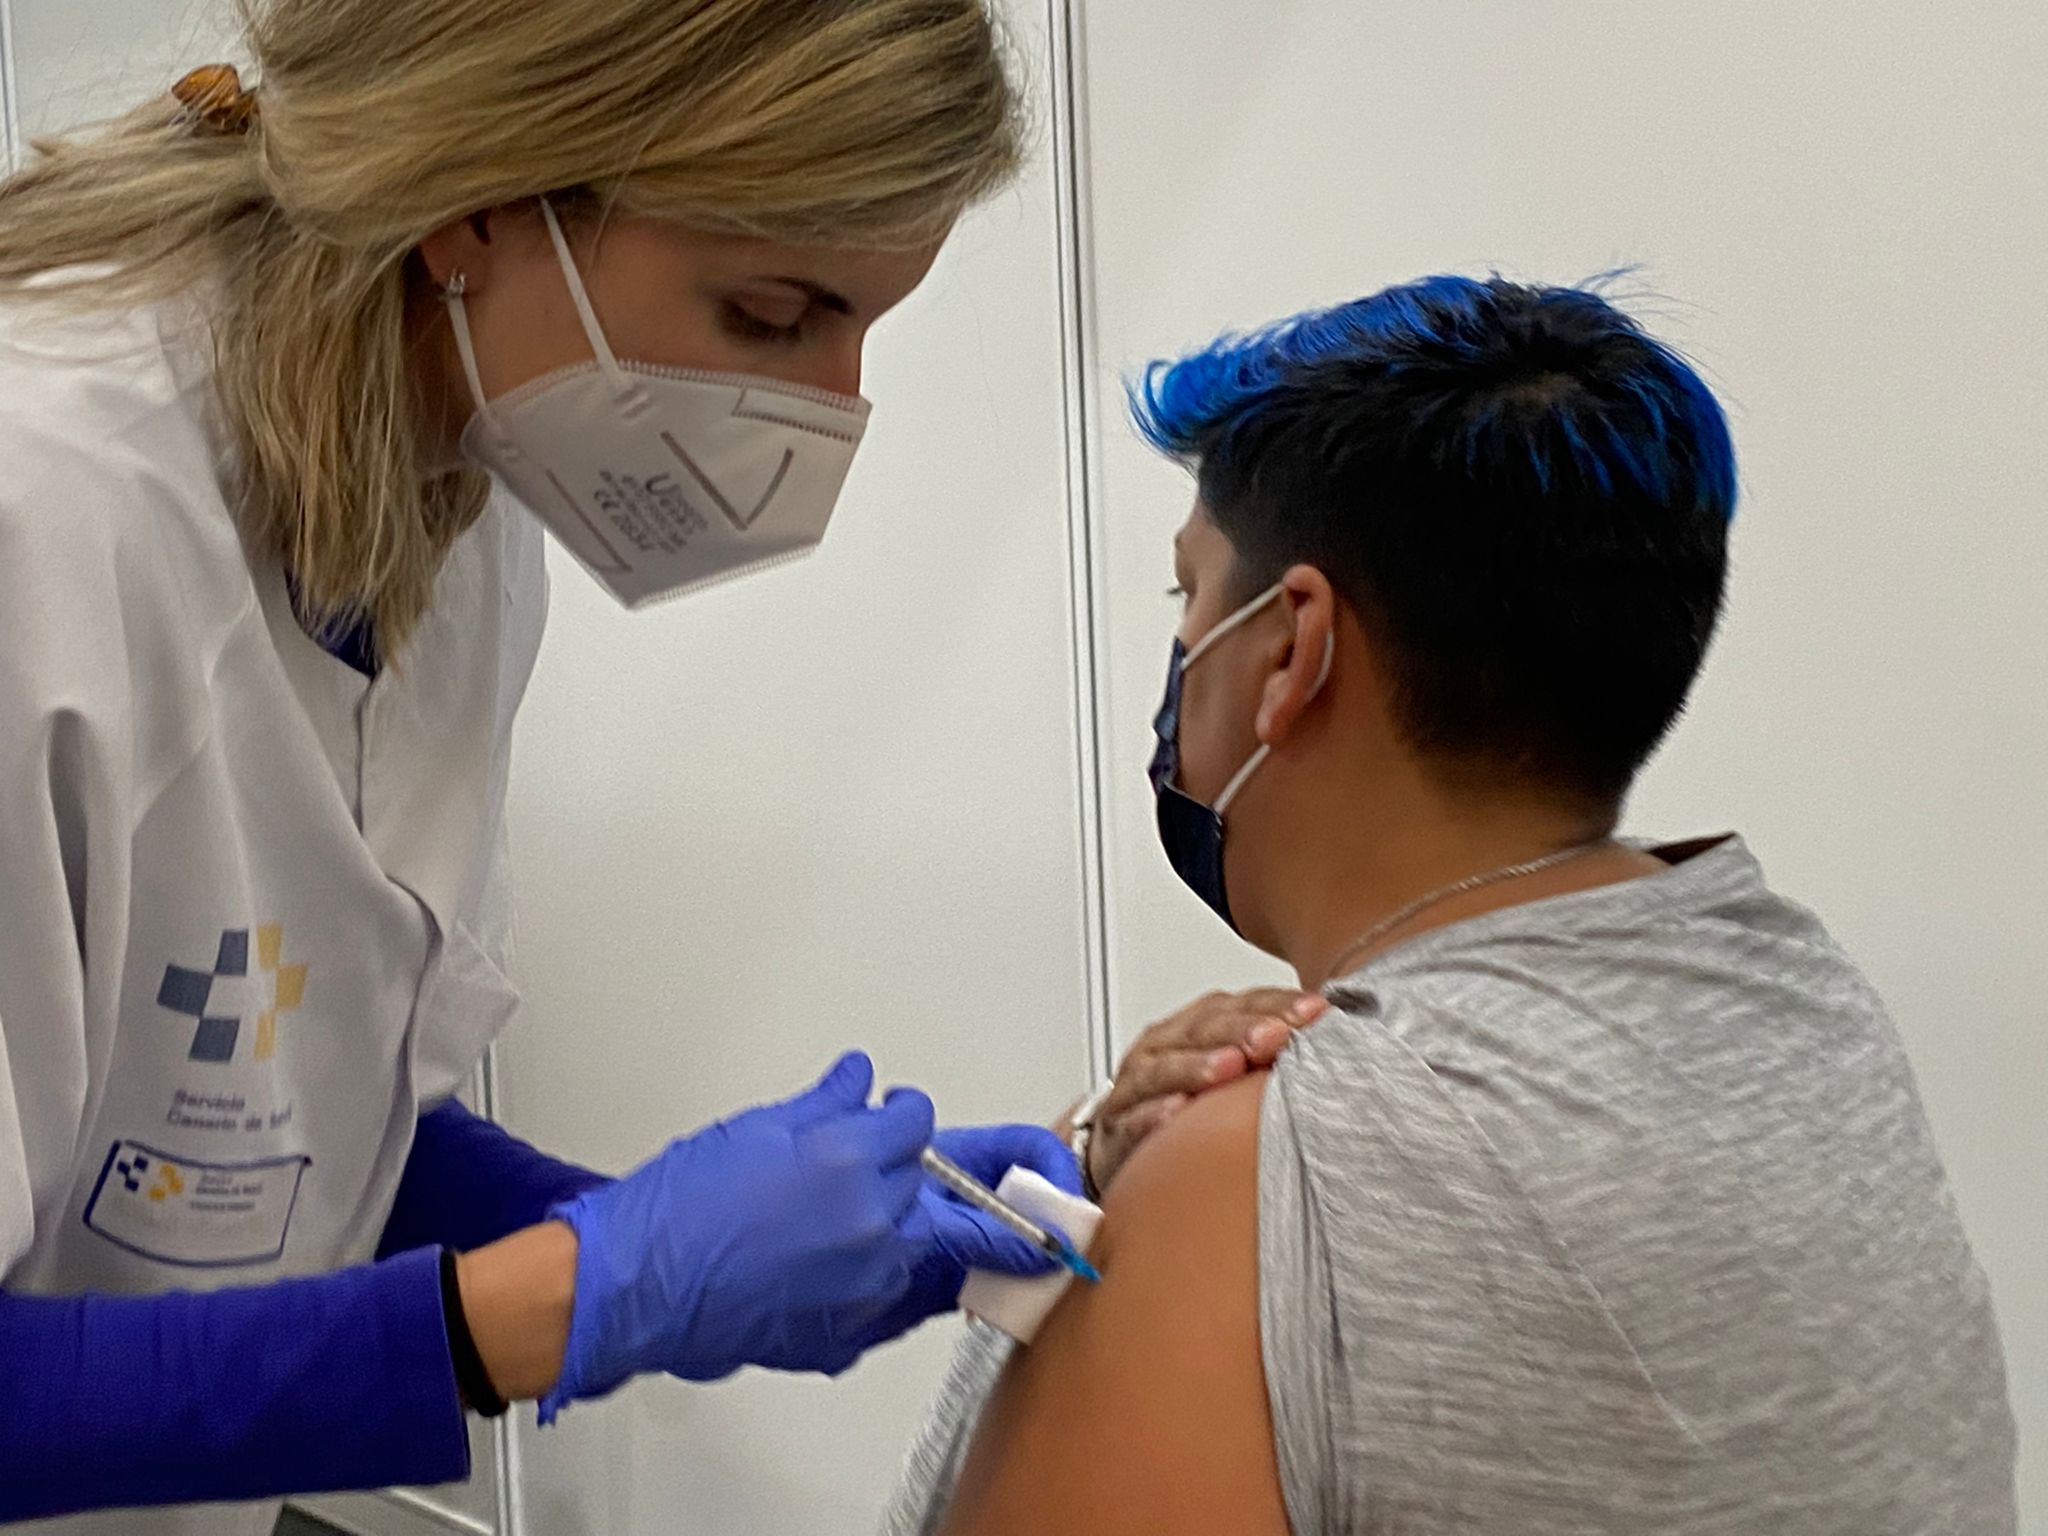 Vacunación contra Covid-19 / CanariasNoticias.es 